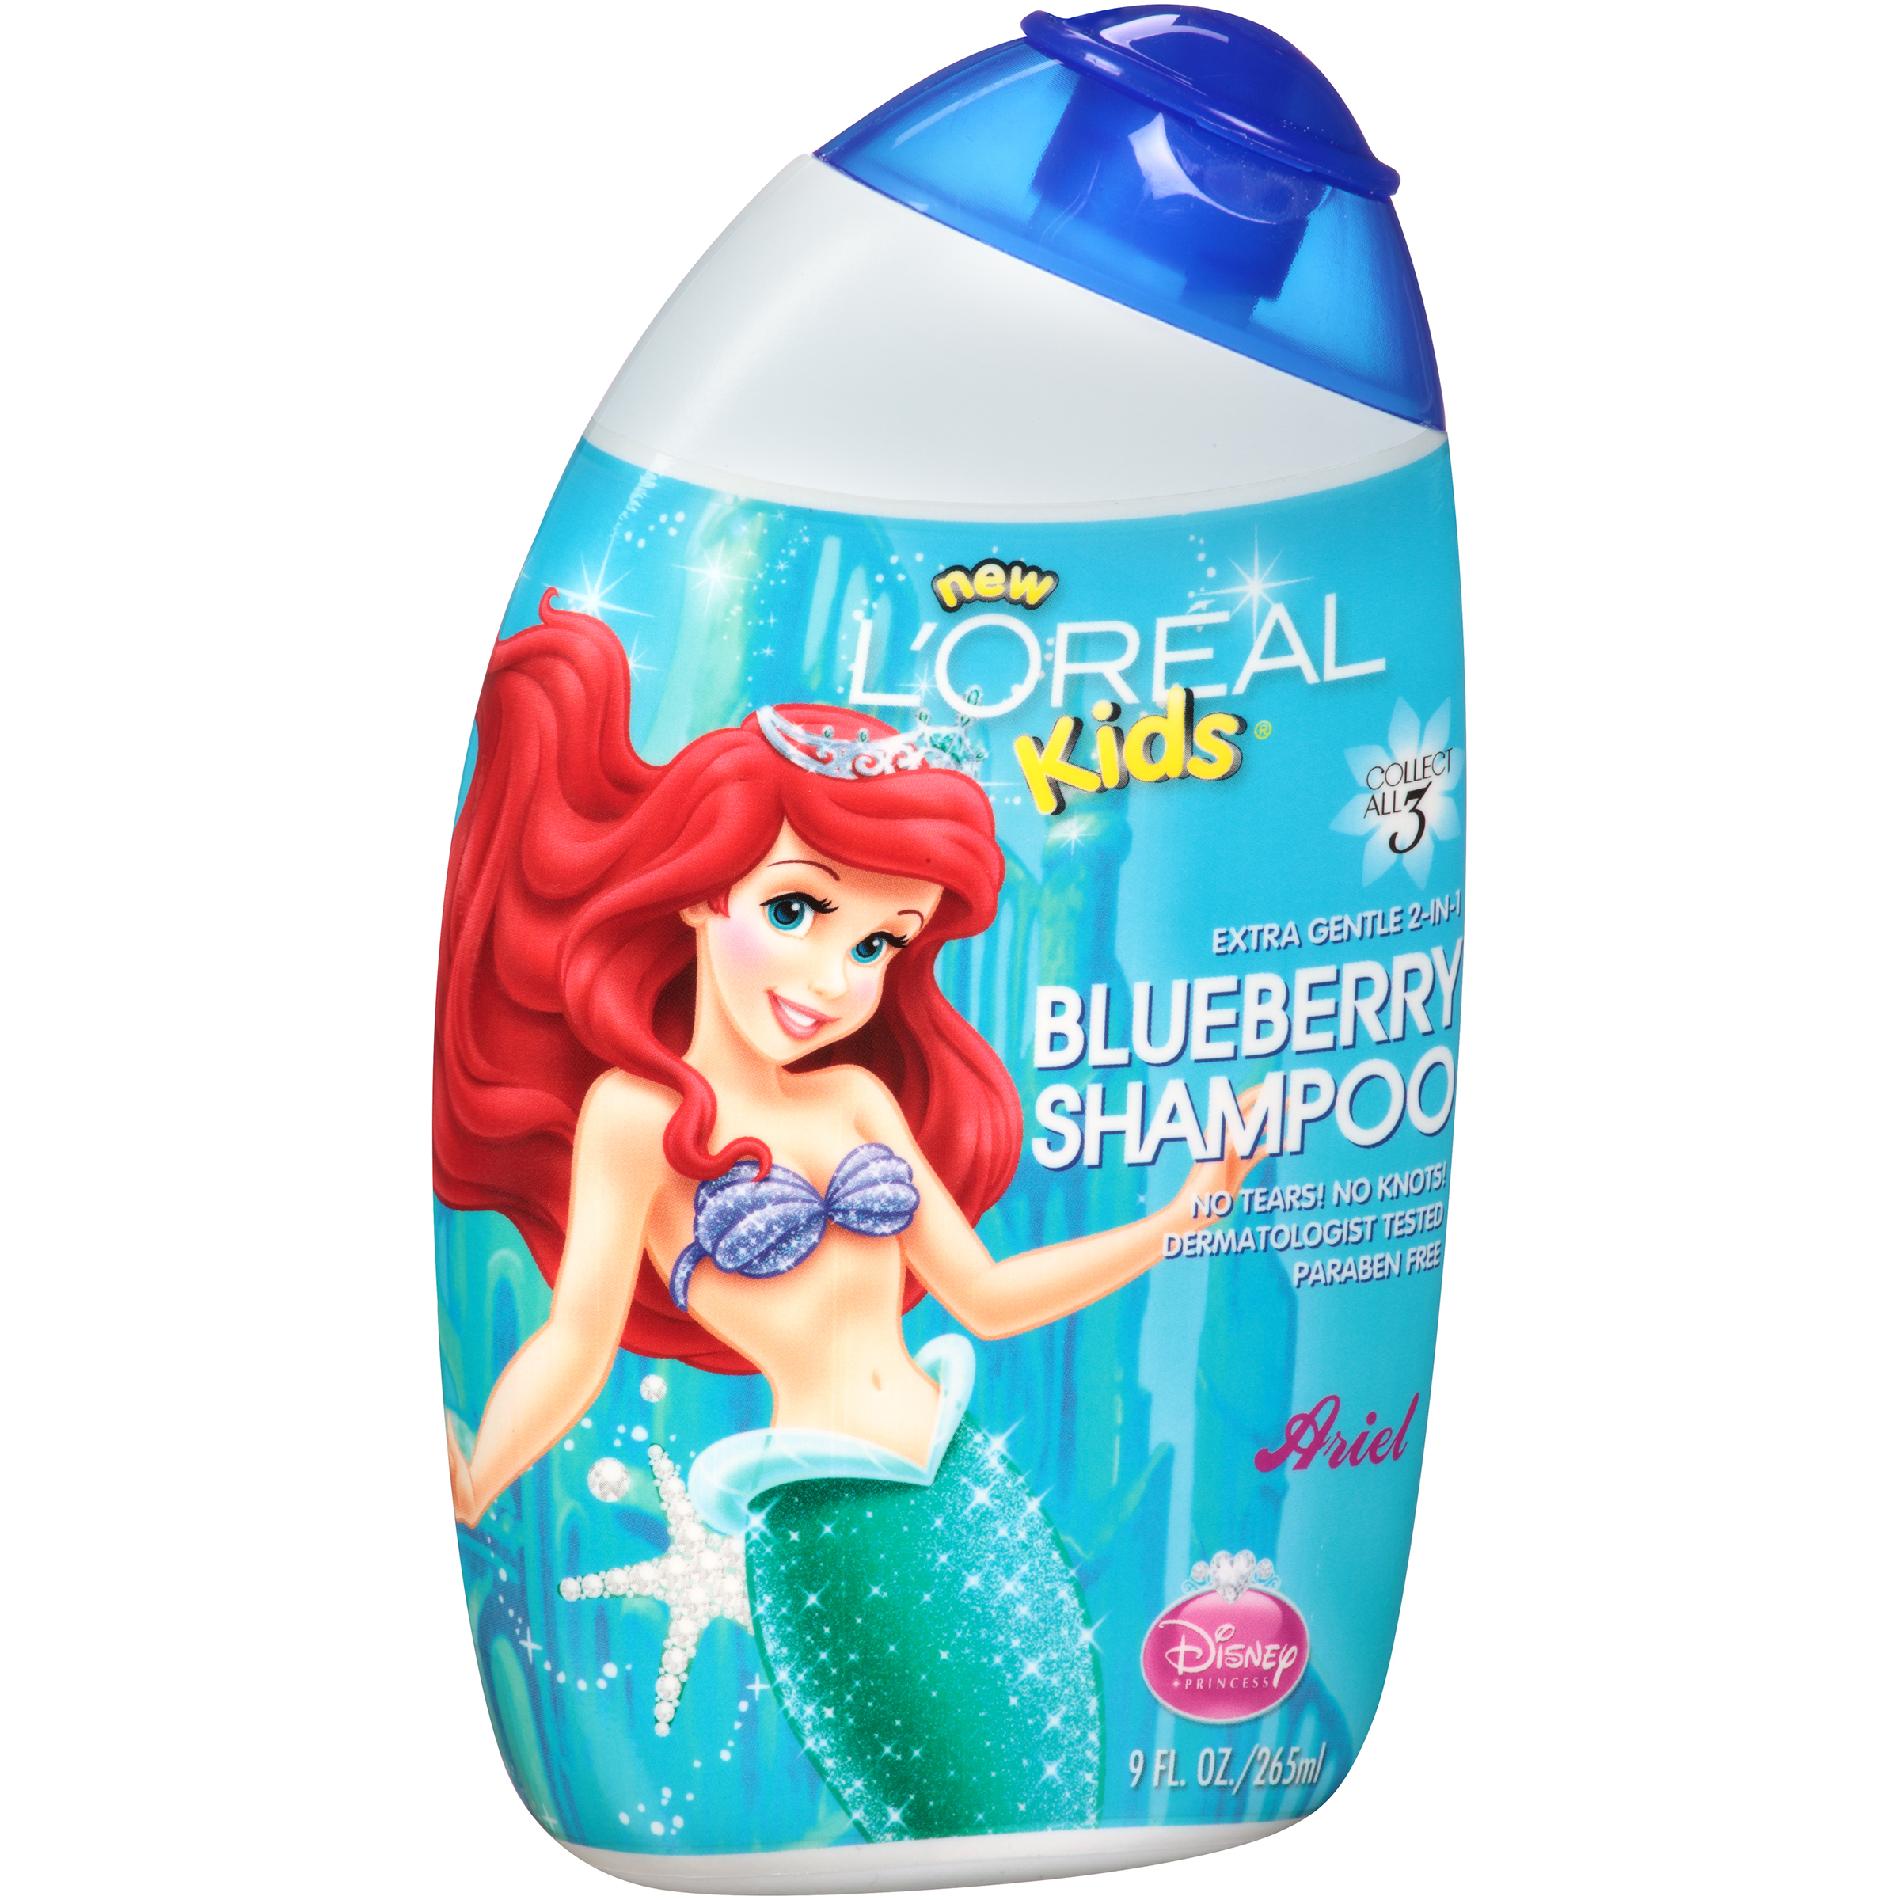 L'Oreal Shampoo, Disney Princess Ariel Blueberry 2-in-1, 9 fl oz (265 ml)